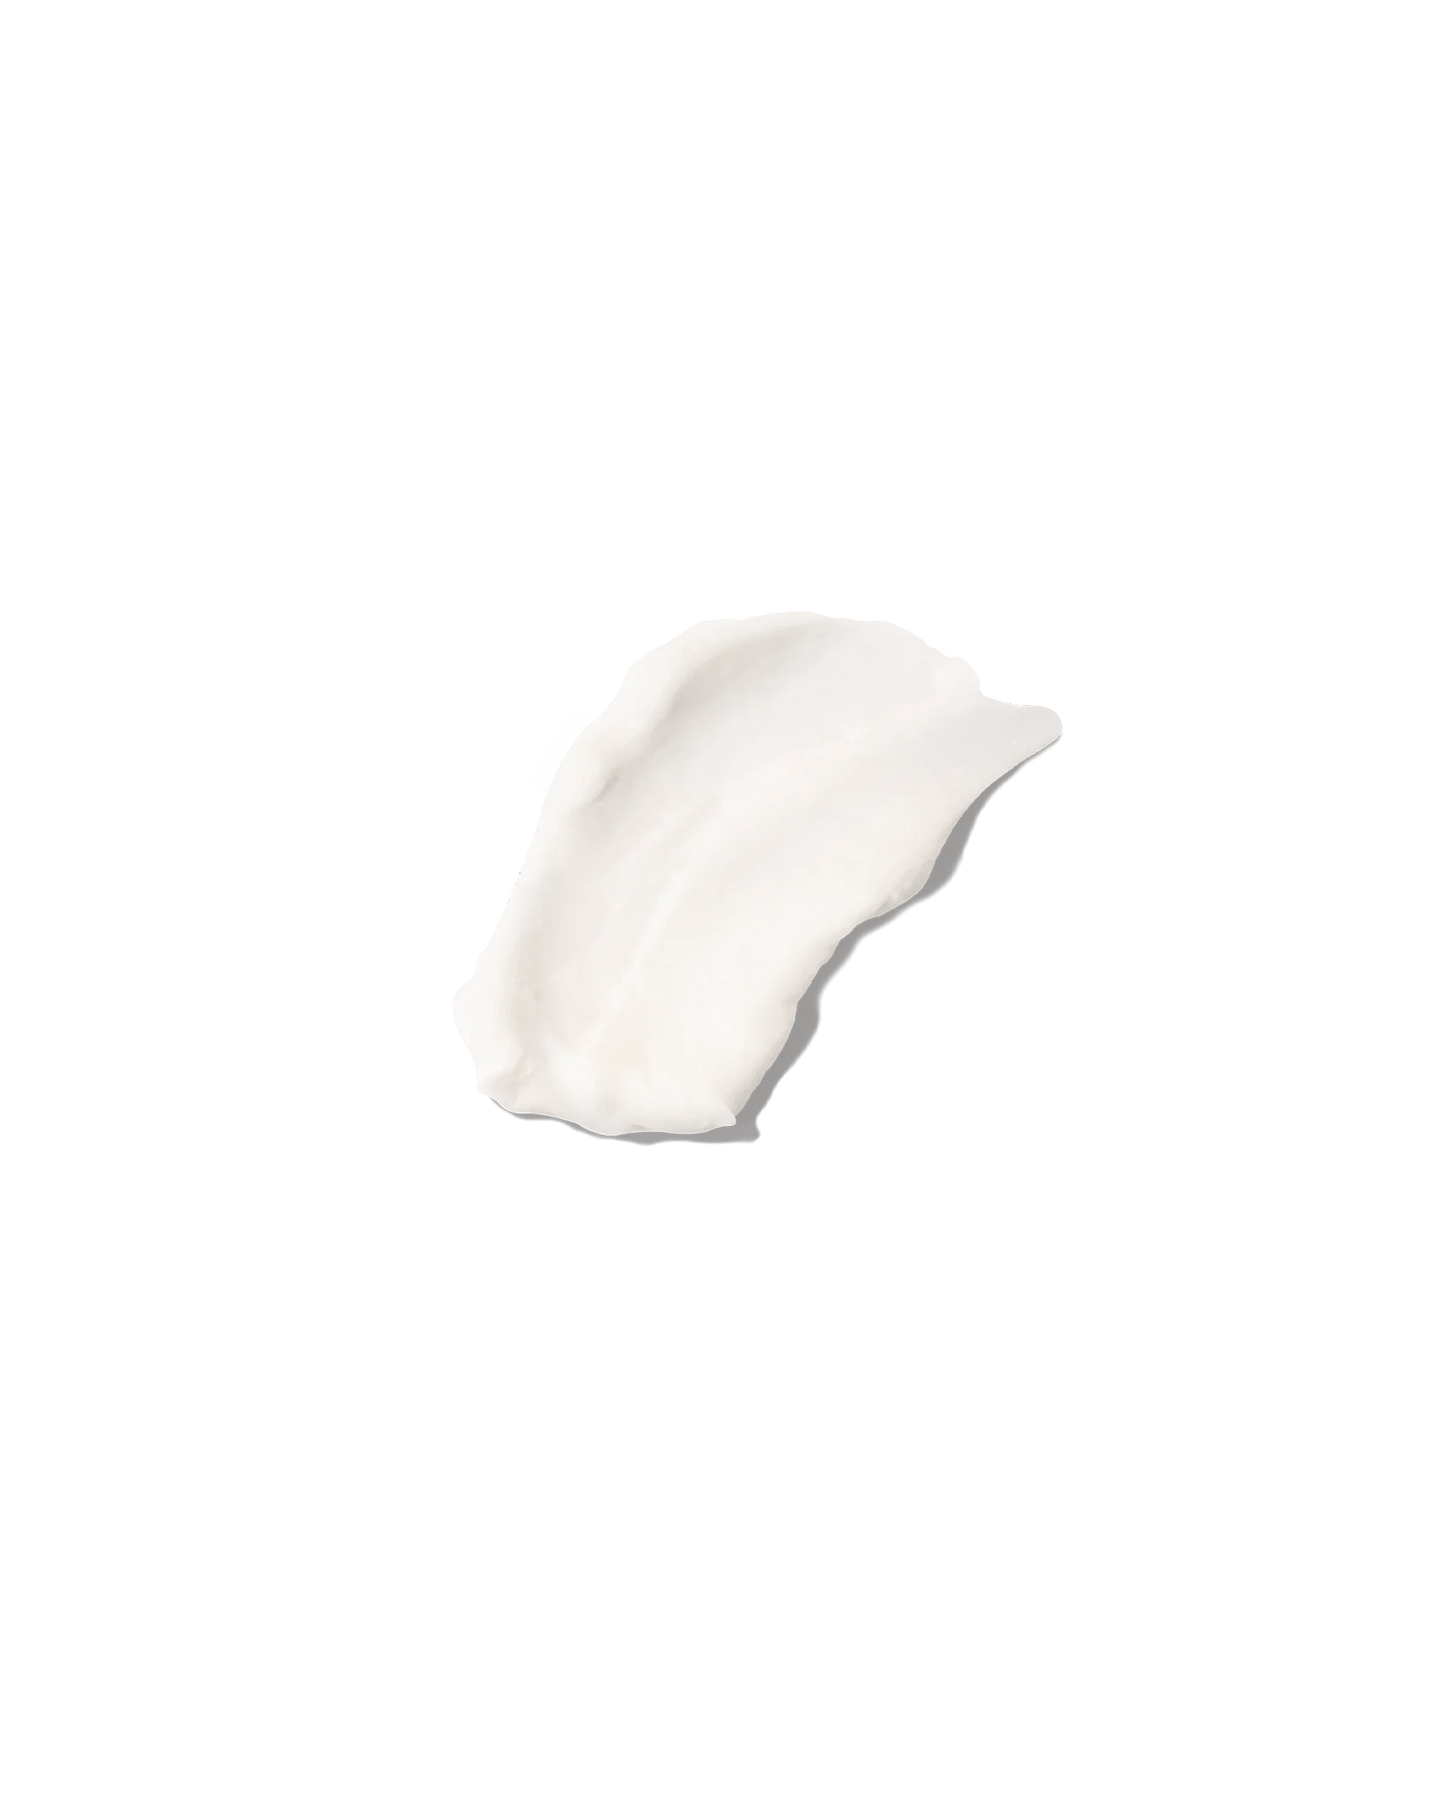 MANI Sanitizing and Moisturizing Hand Cream Gift Set - GLOWDEGA